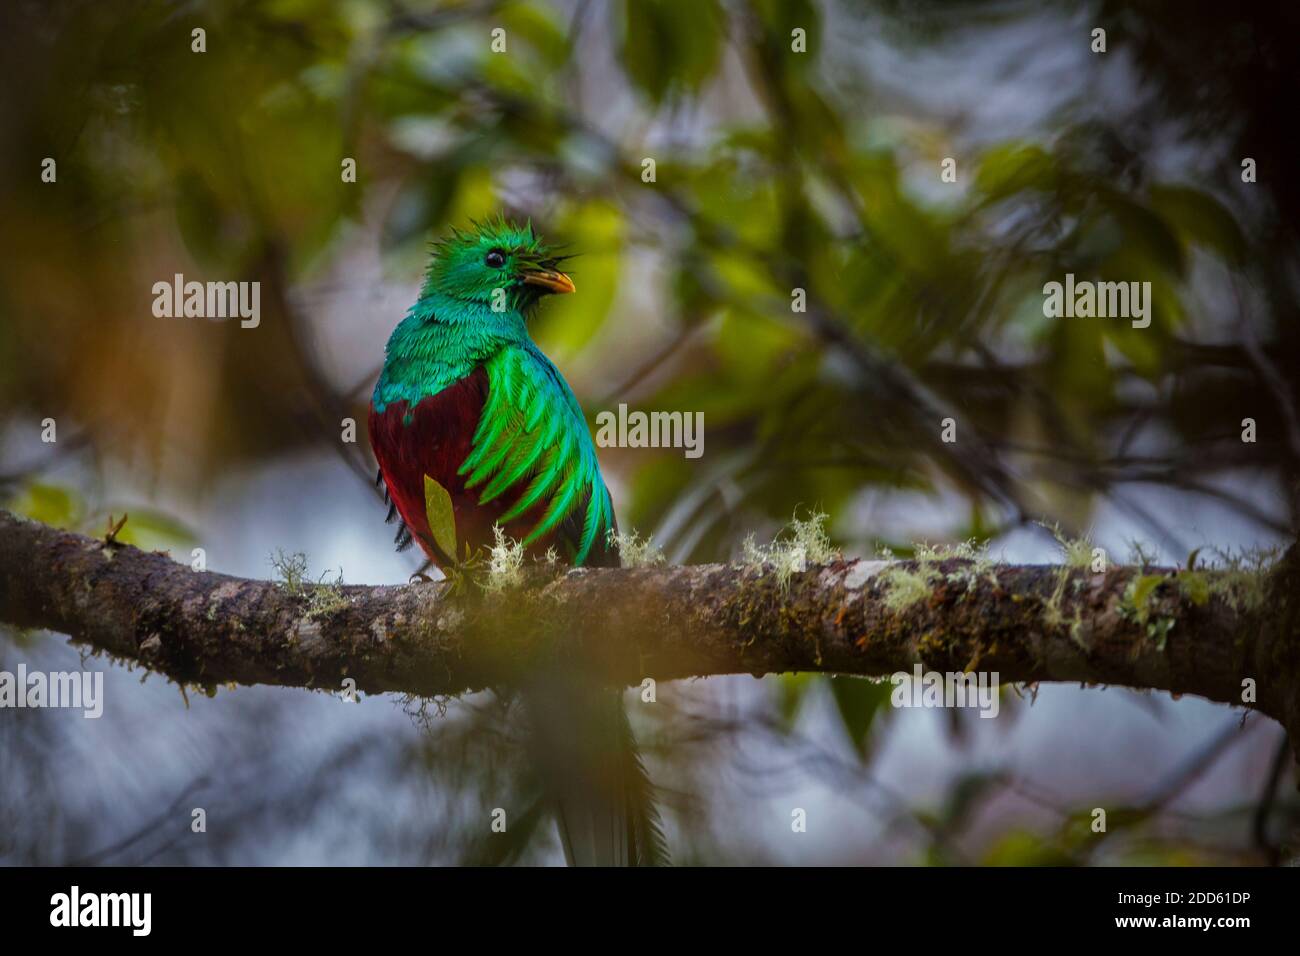 Panama faune avec un quetzal resplendent, Pharomachrus mocinno, dans la forêt nuageuse du parc national de la Amistad, province de Chiriqui, Panama. Banque D'Images